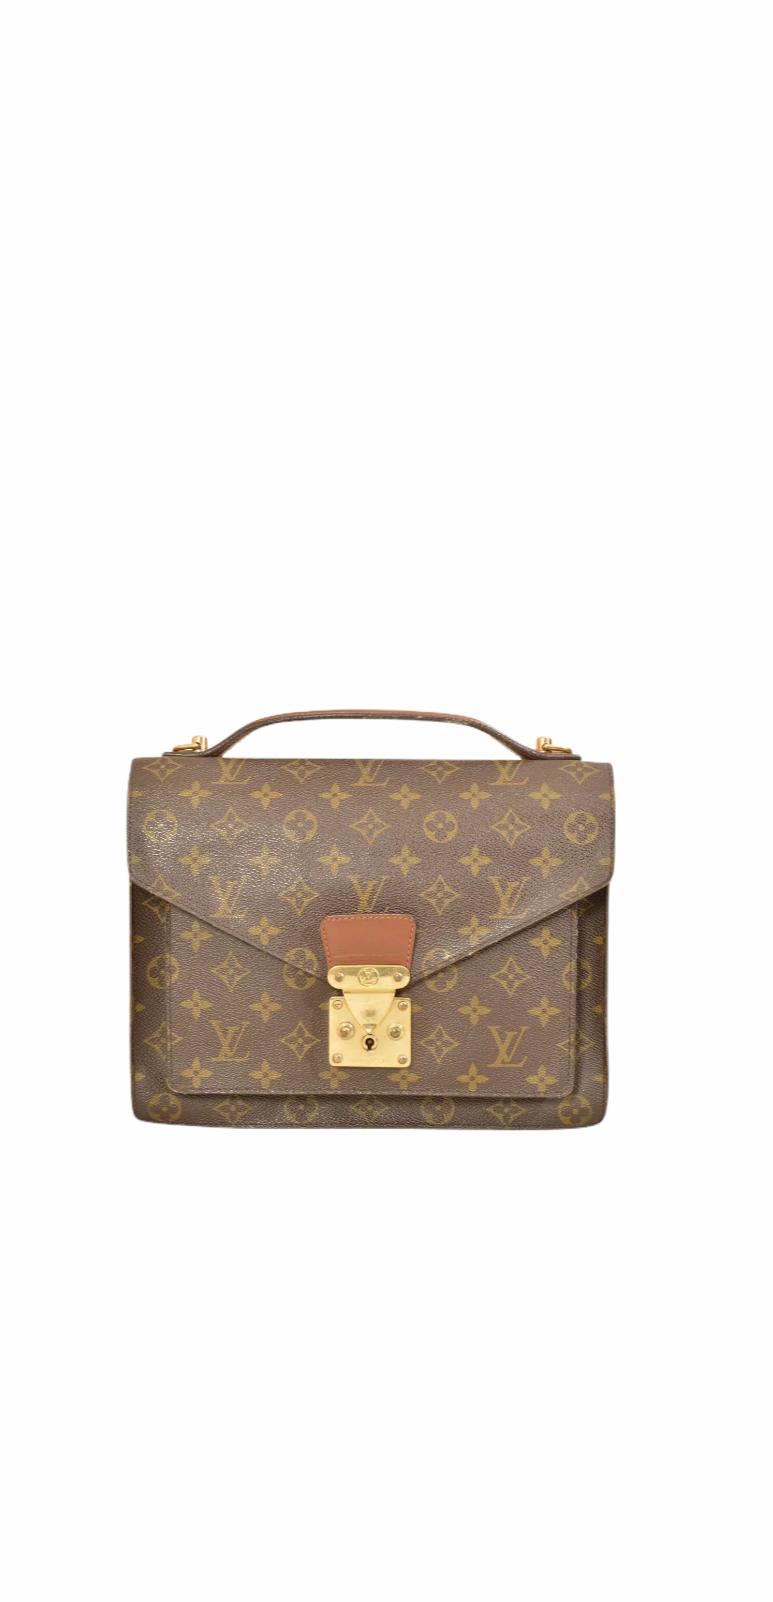 Authentic pre-owned Louis Vuitton Monceau 28 crossbody shoulder bag